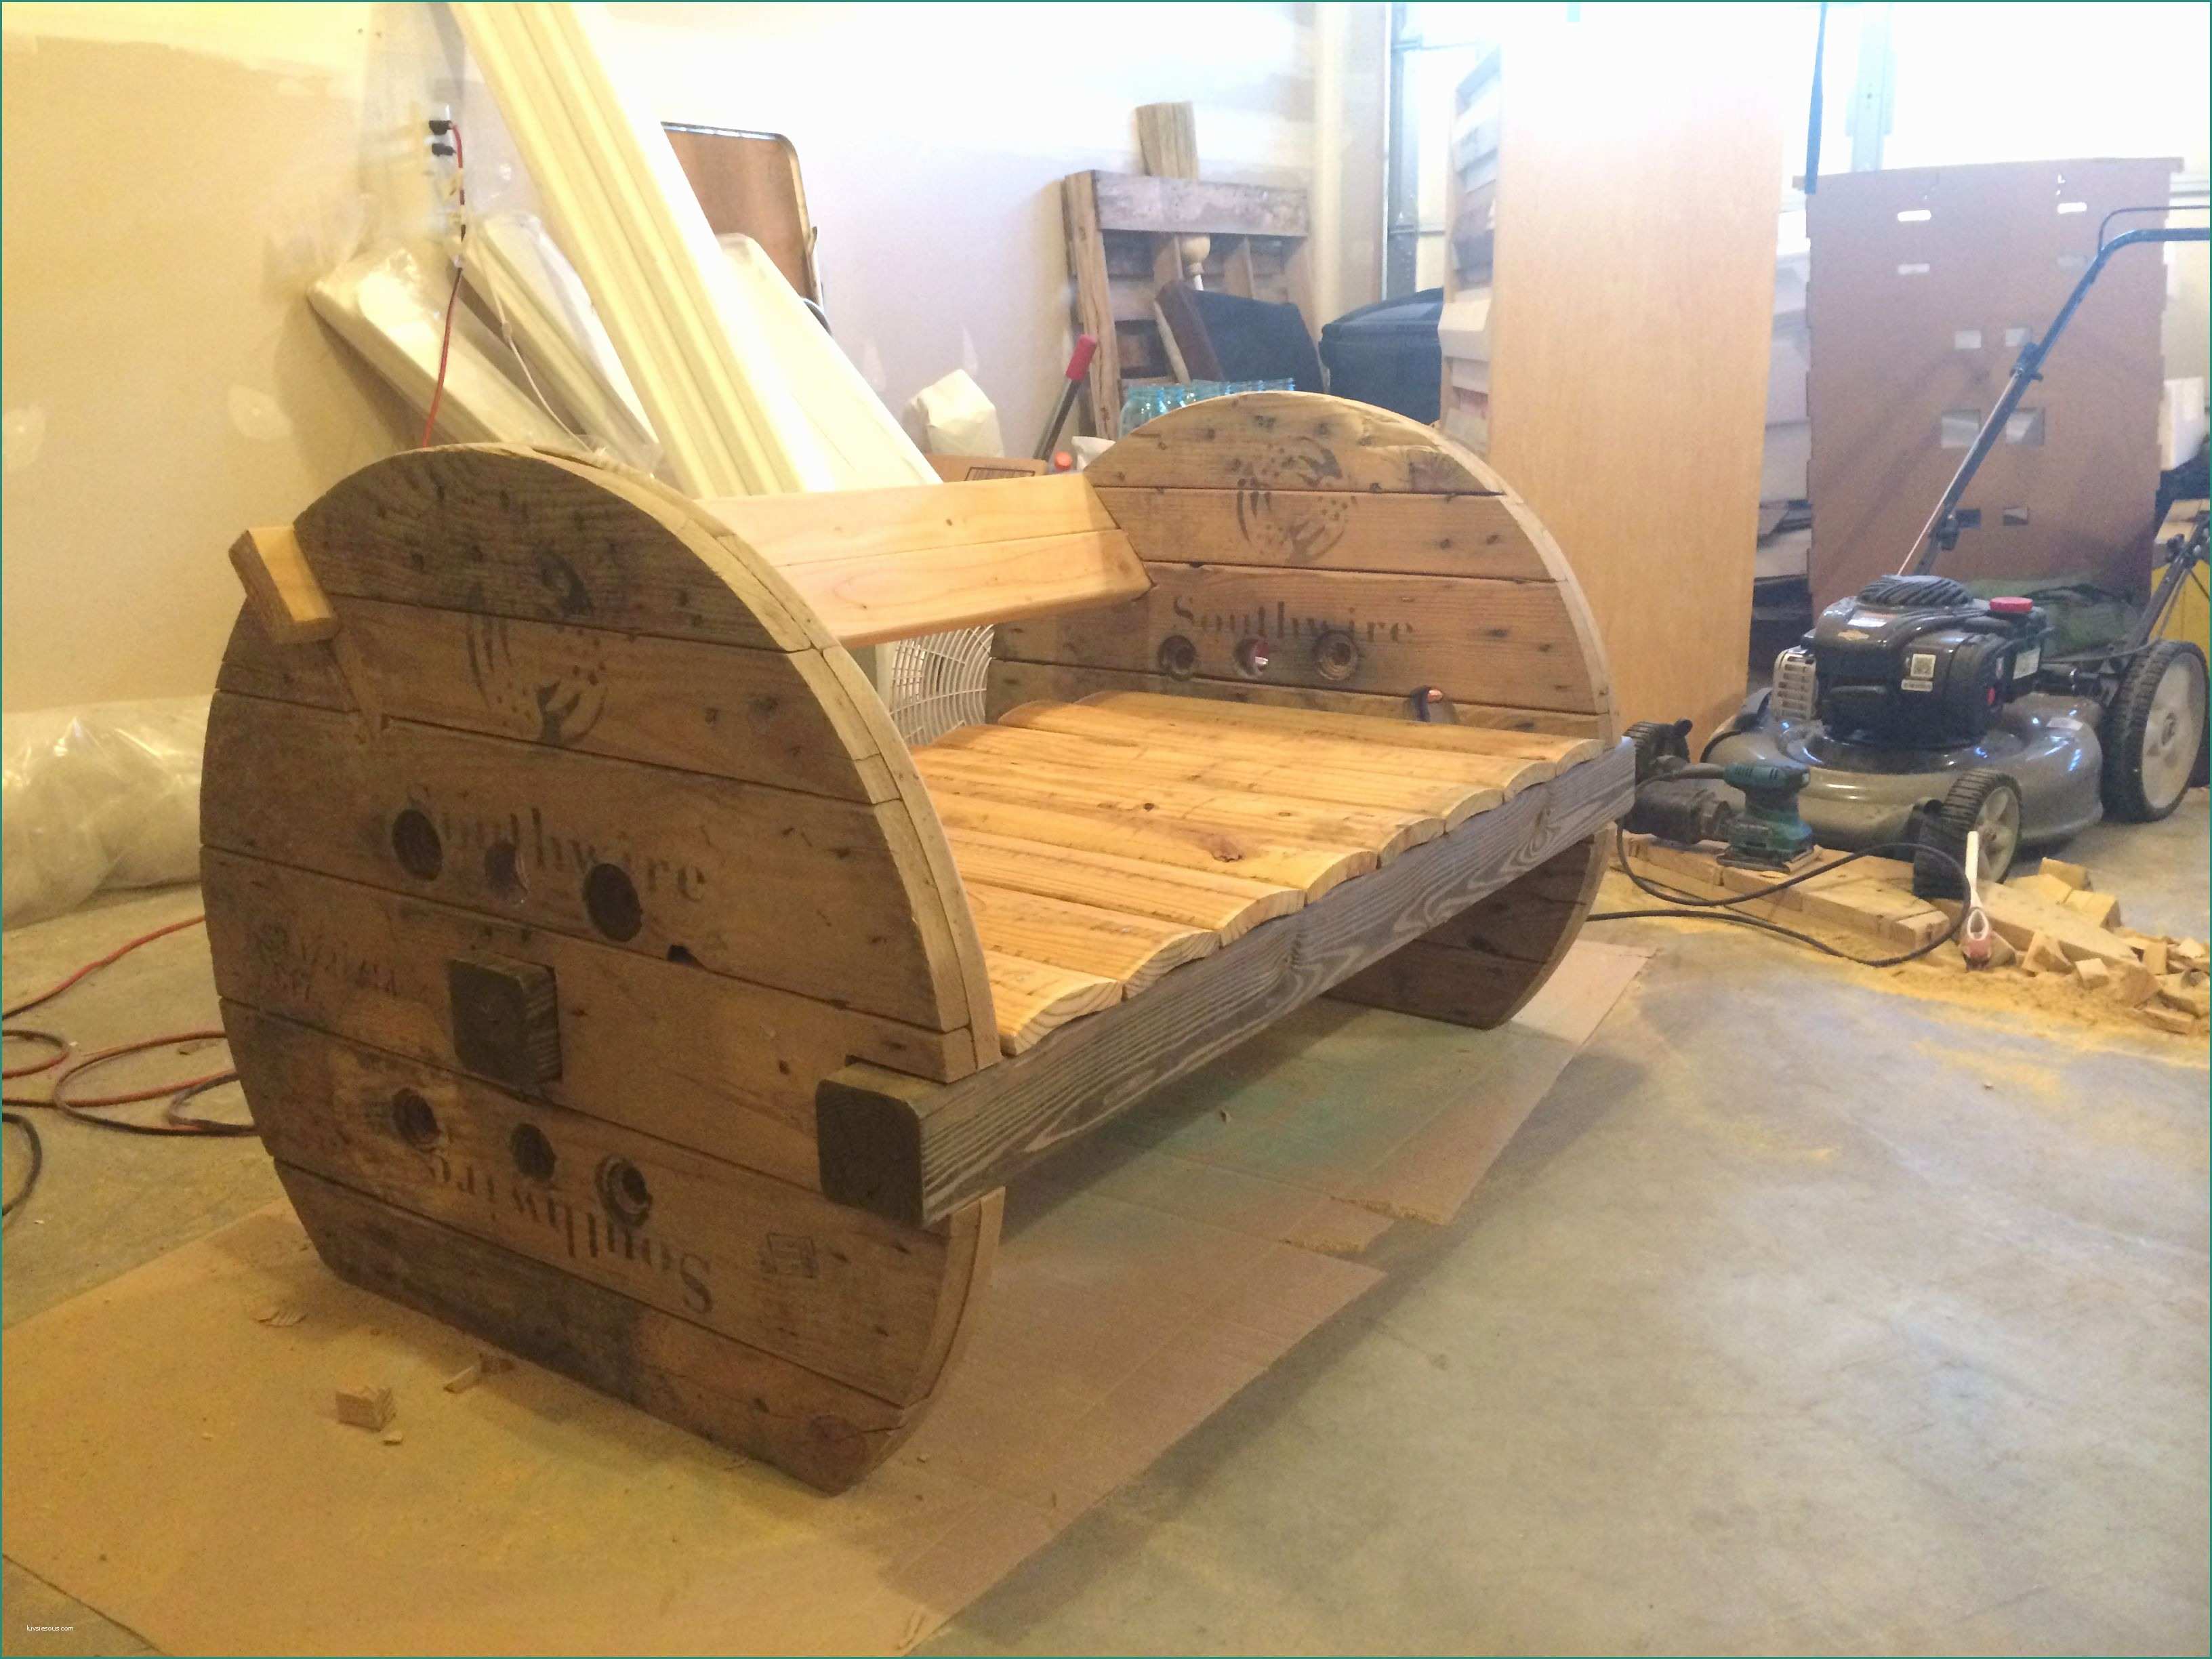 Pollaio Fai Da Te Progetto E Pin Di Justine Helleson Su Wood Work Furniture Nel 2018